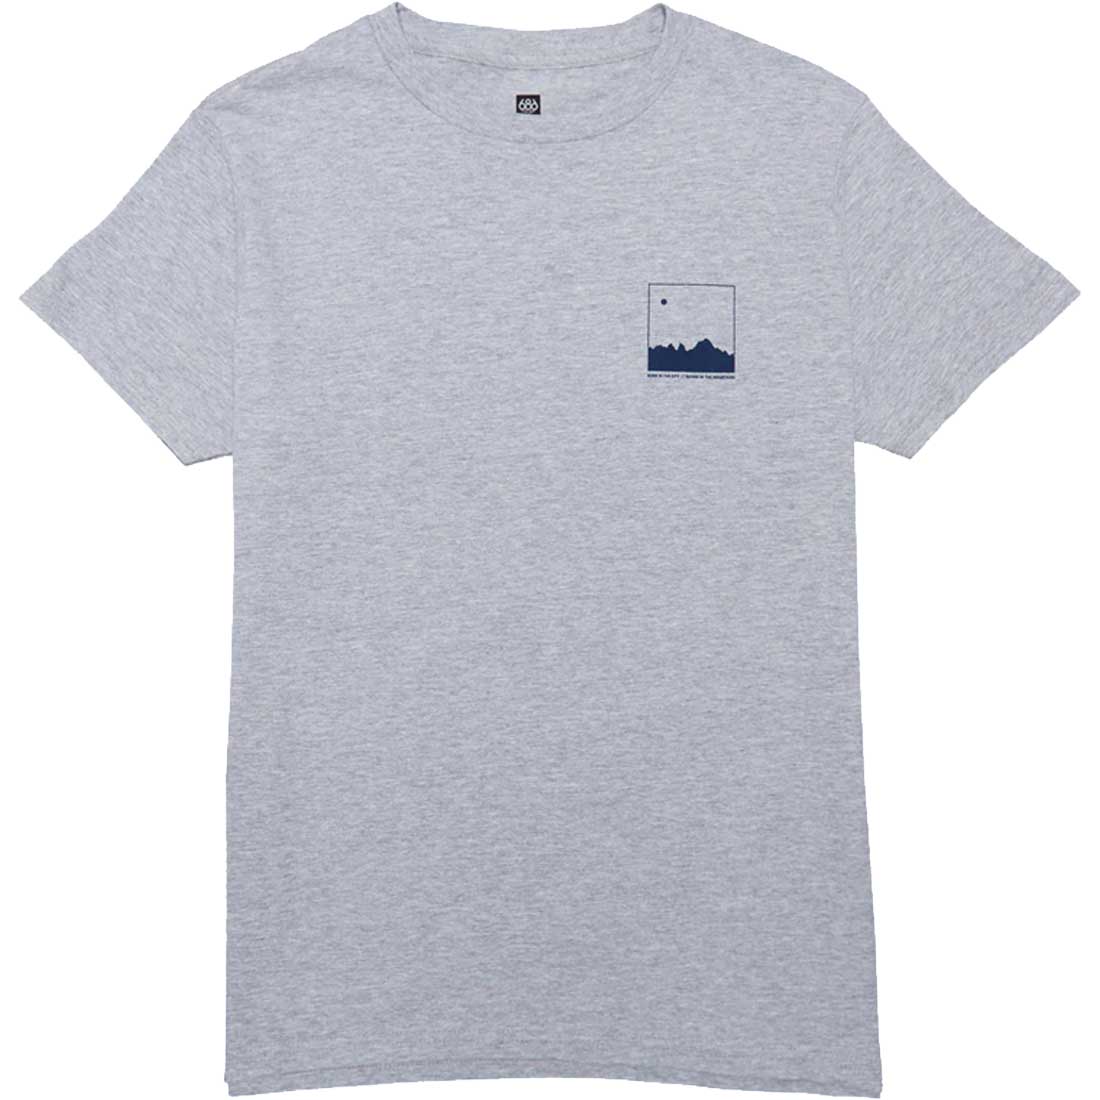 686 Untold T-Shirt - Men's